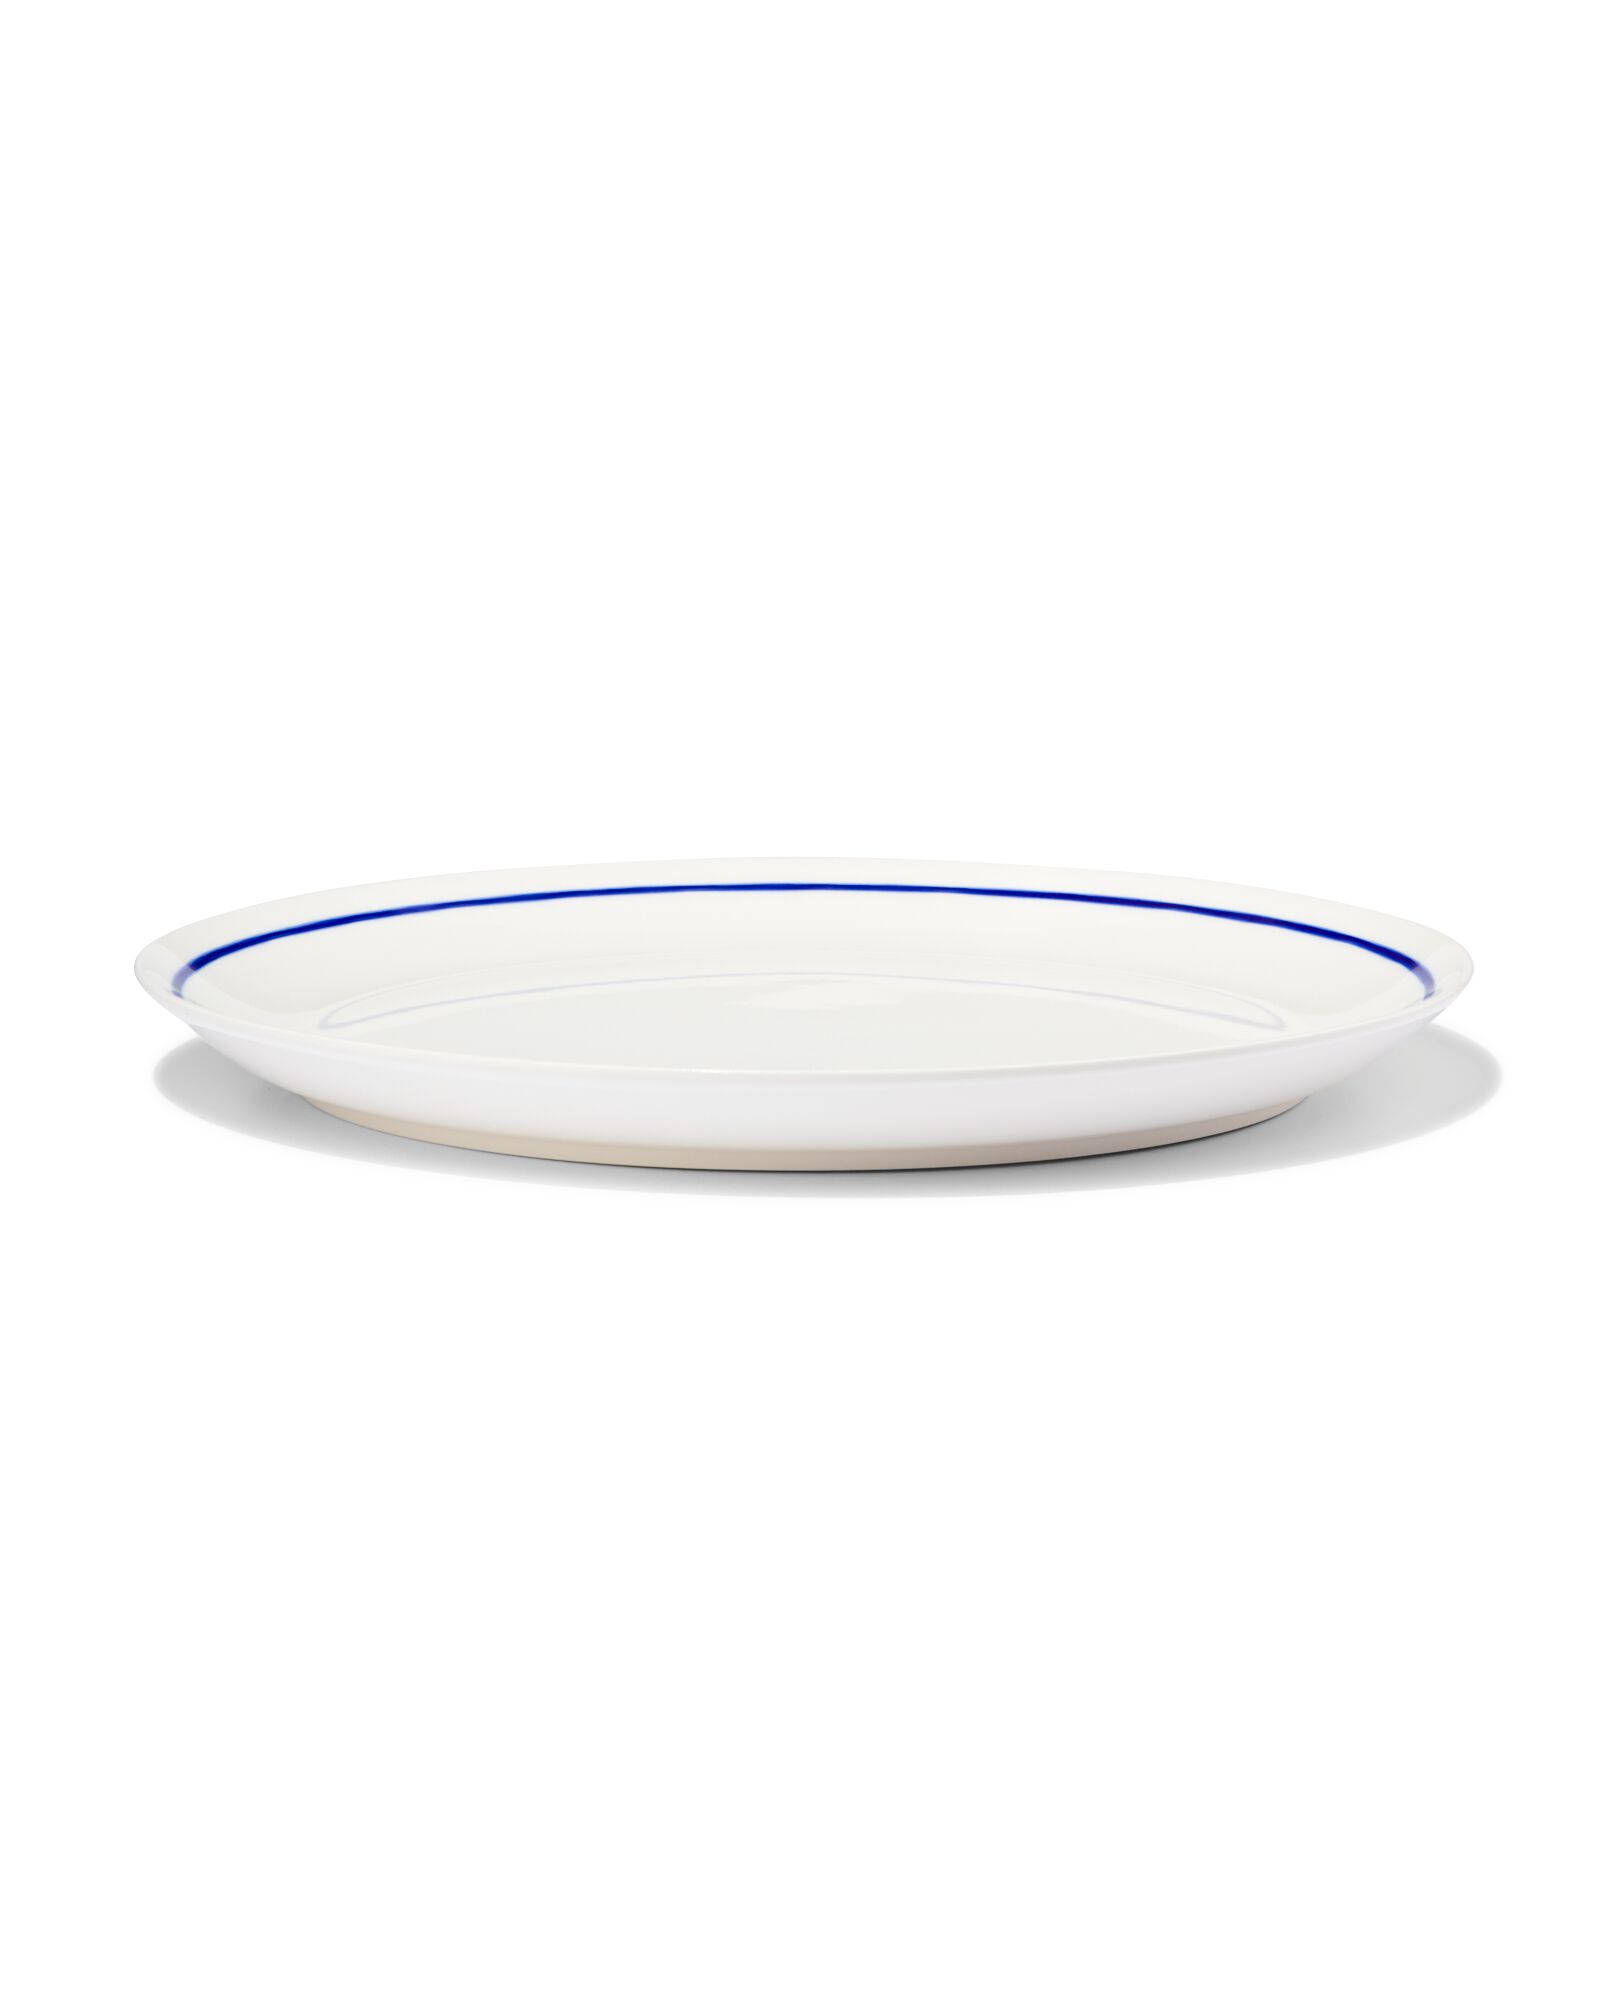 hema assiette plate ø26cm - new bone blanc et bleu - vaisselle dépareillée (white)